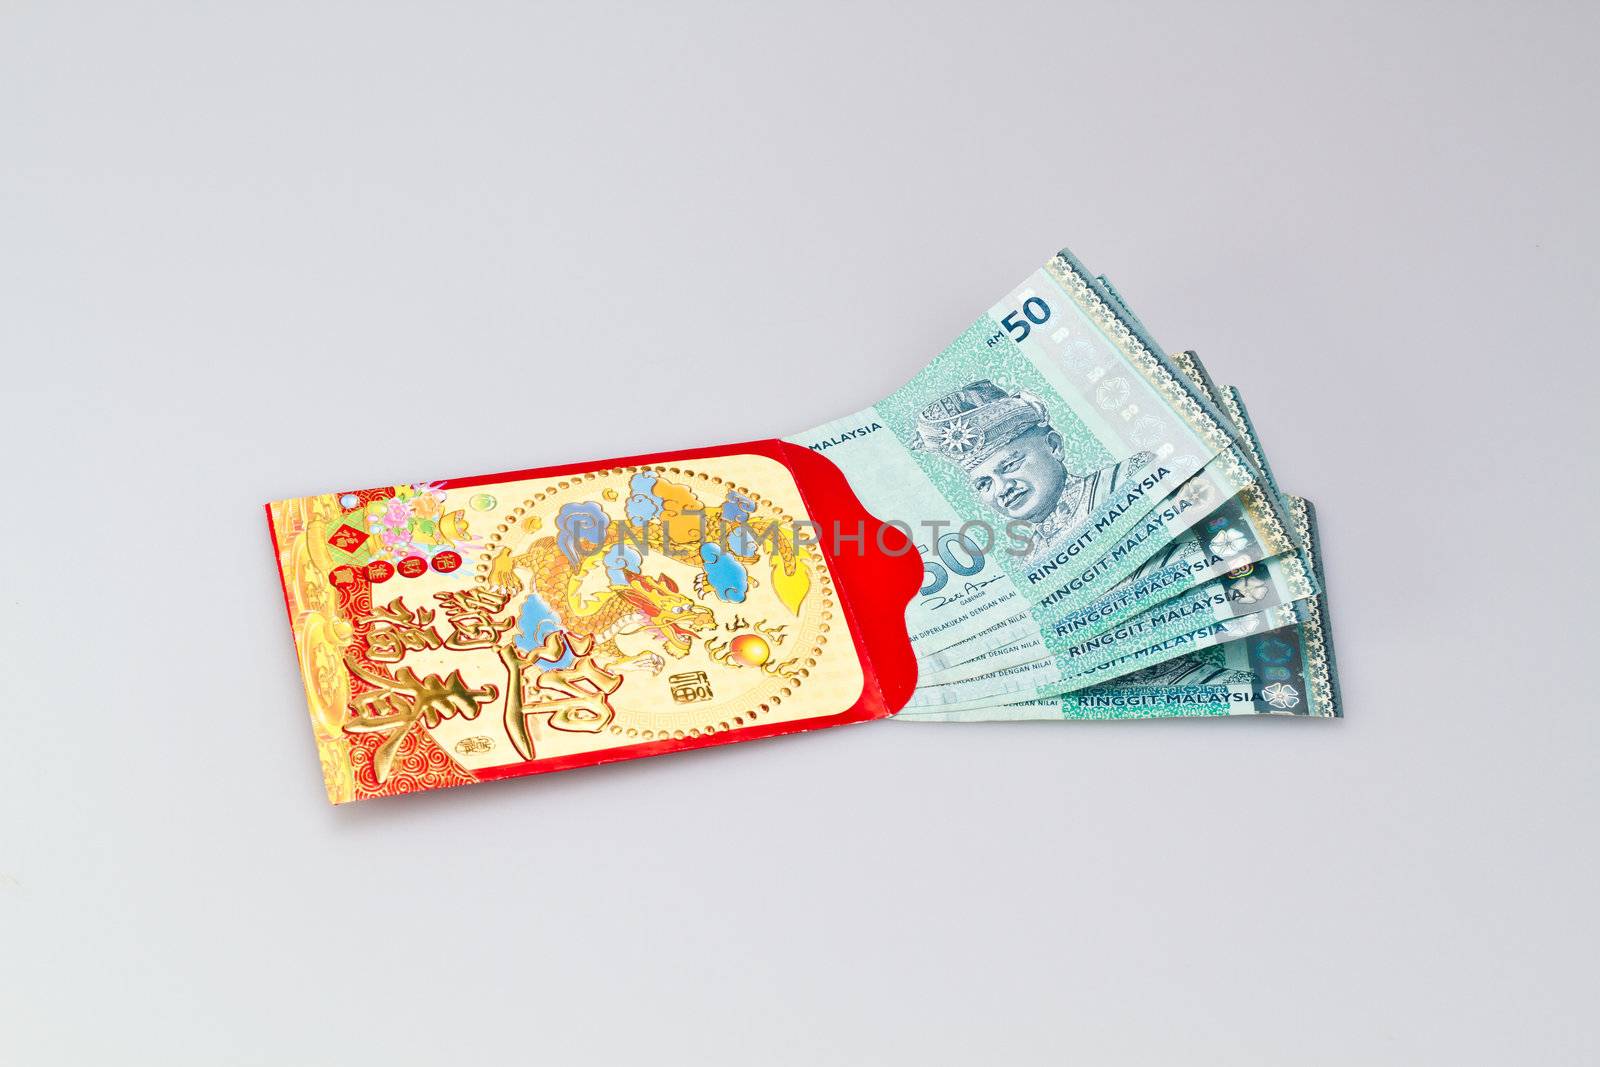 Ang-Pau and Banknote by azamshah72